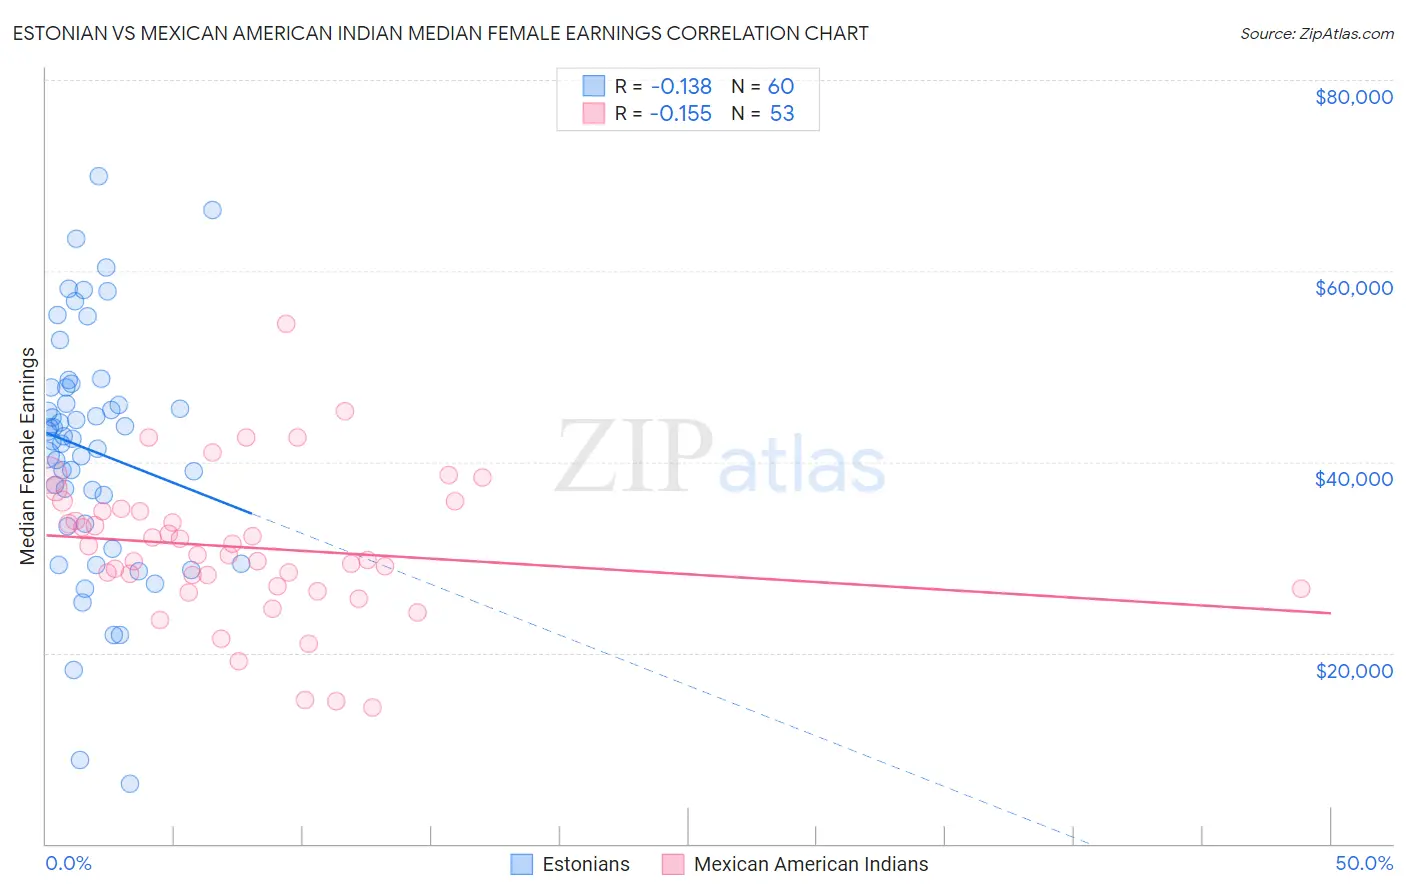 Estonian vs Mexican American Indian Median Female Earnings